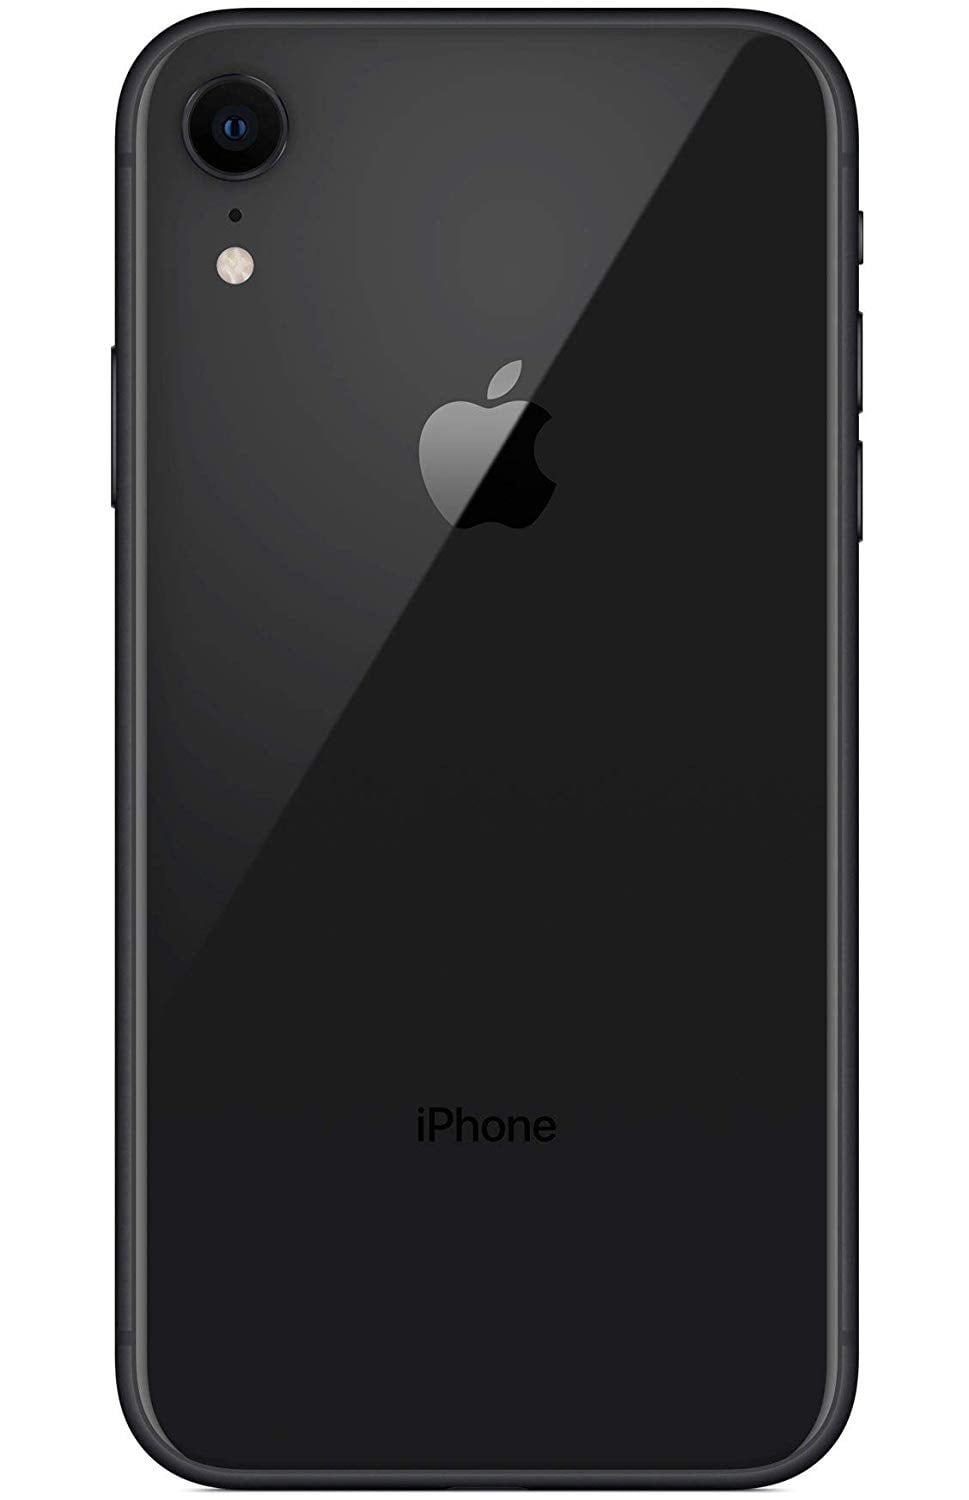 Refurbished Apple iPhone XR 64GB Grade A- Black (AT&T Locked) - Walmart